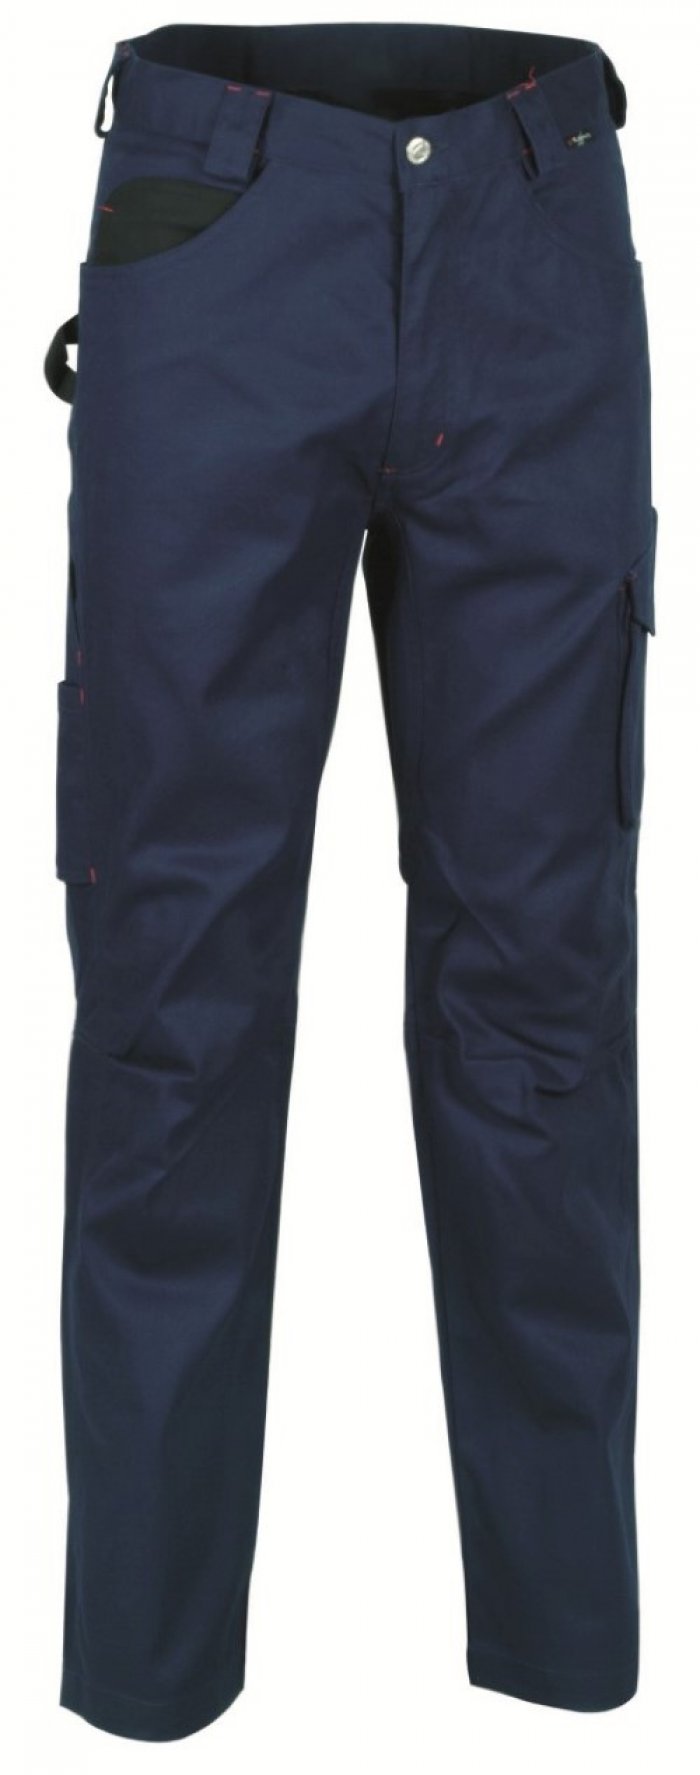 Pantalone drill colore navy tg.46